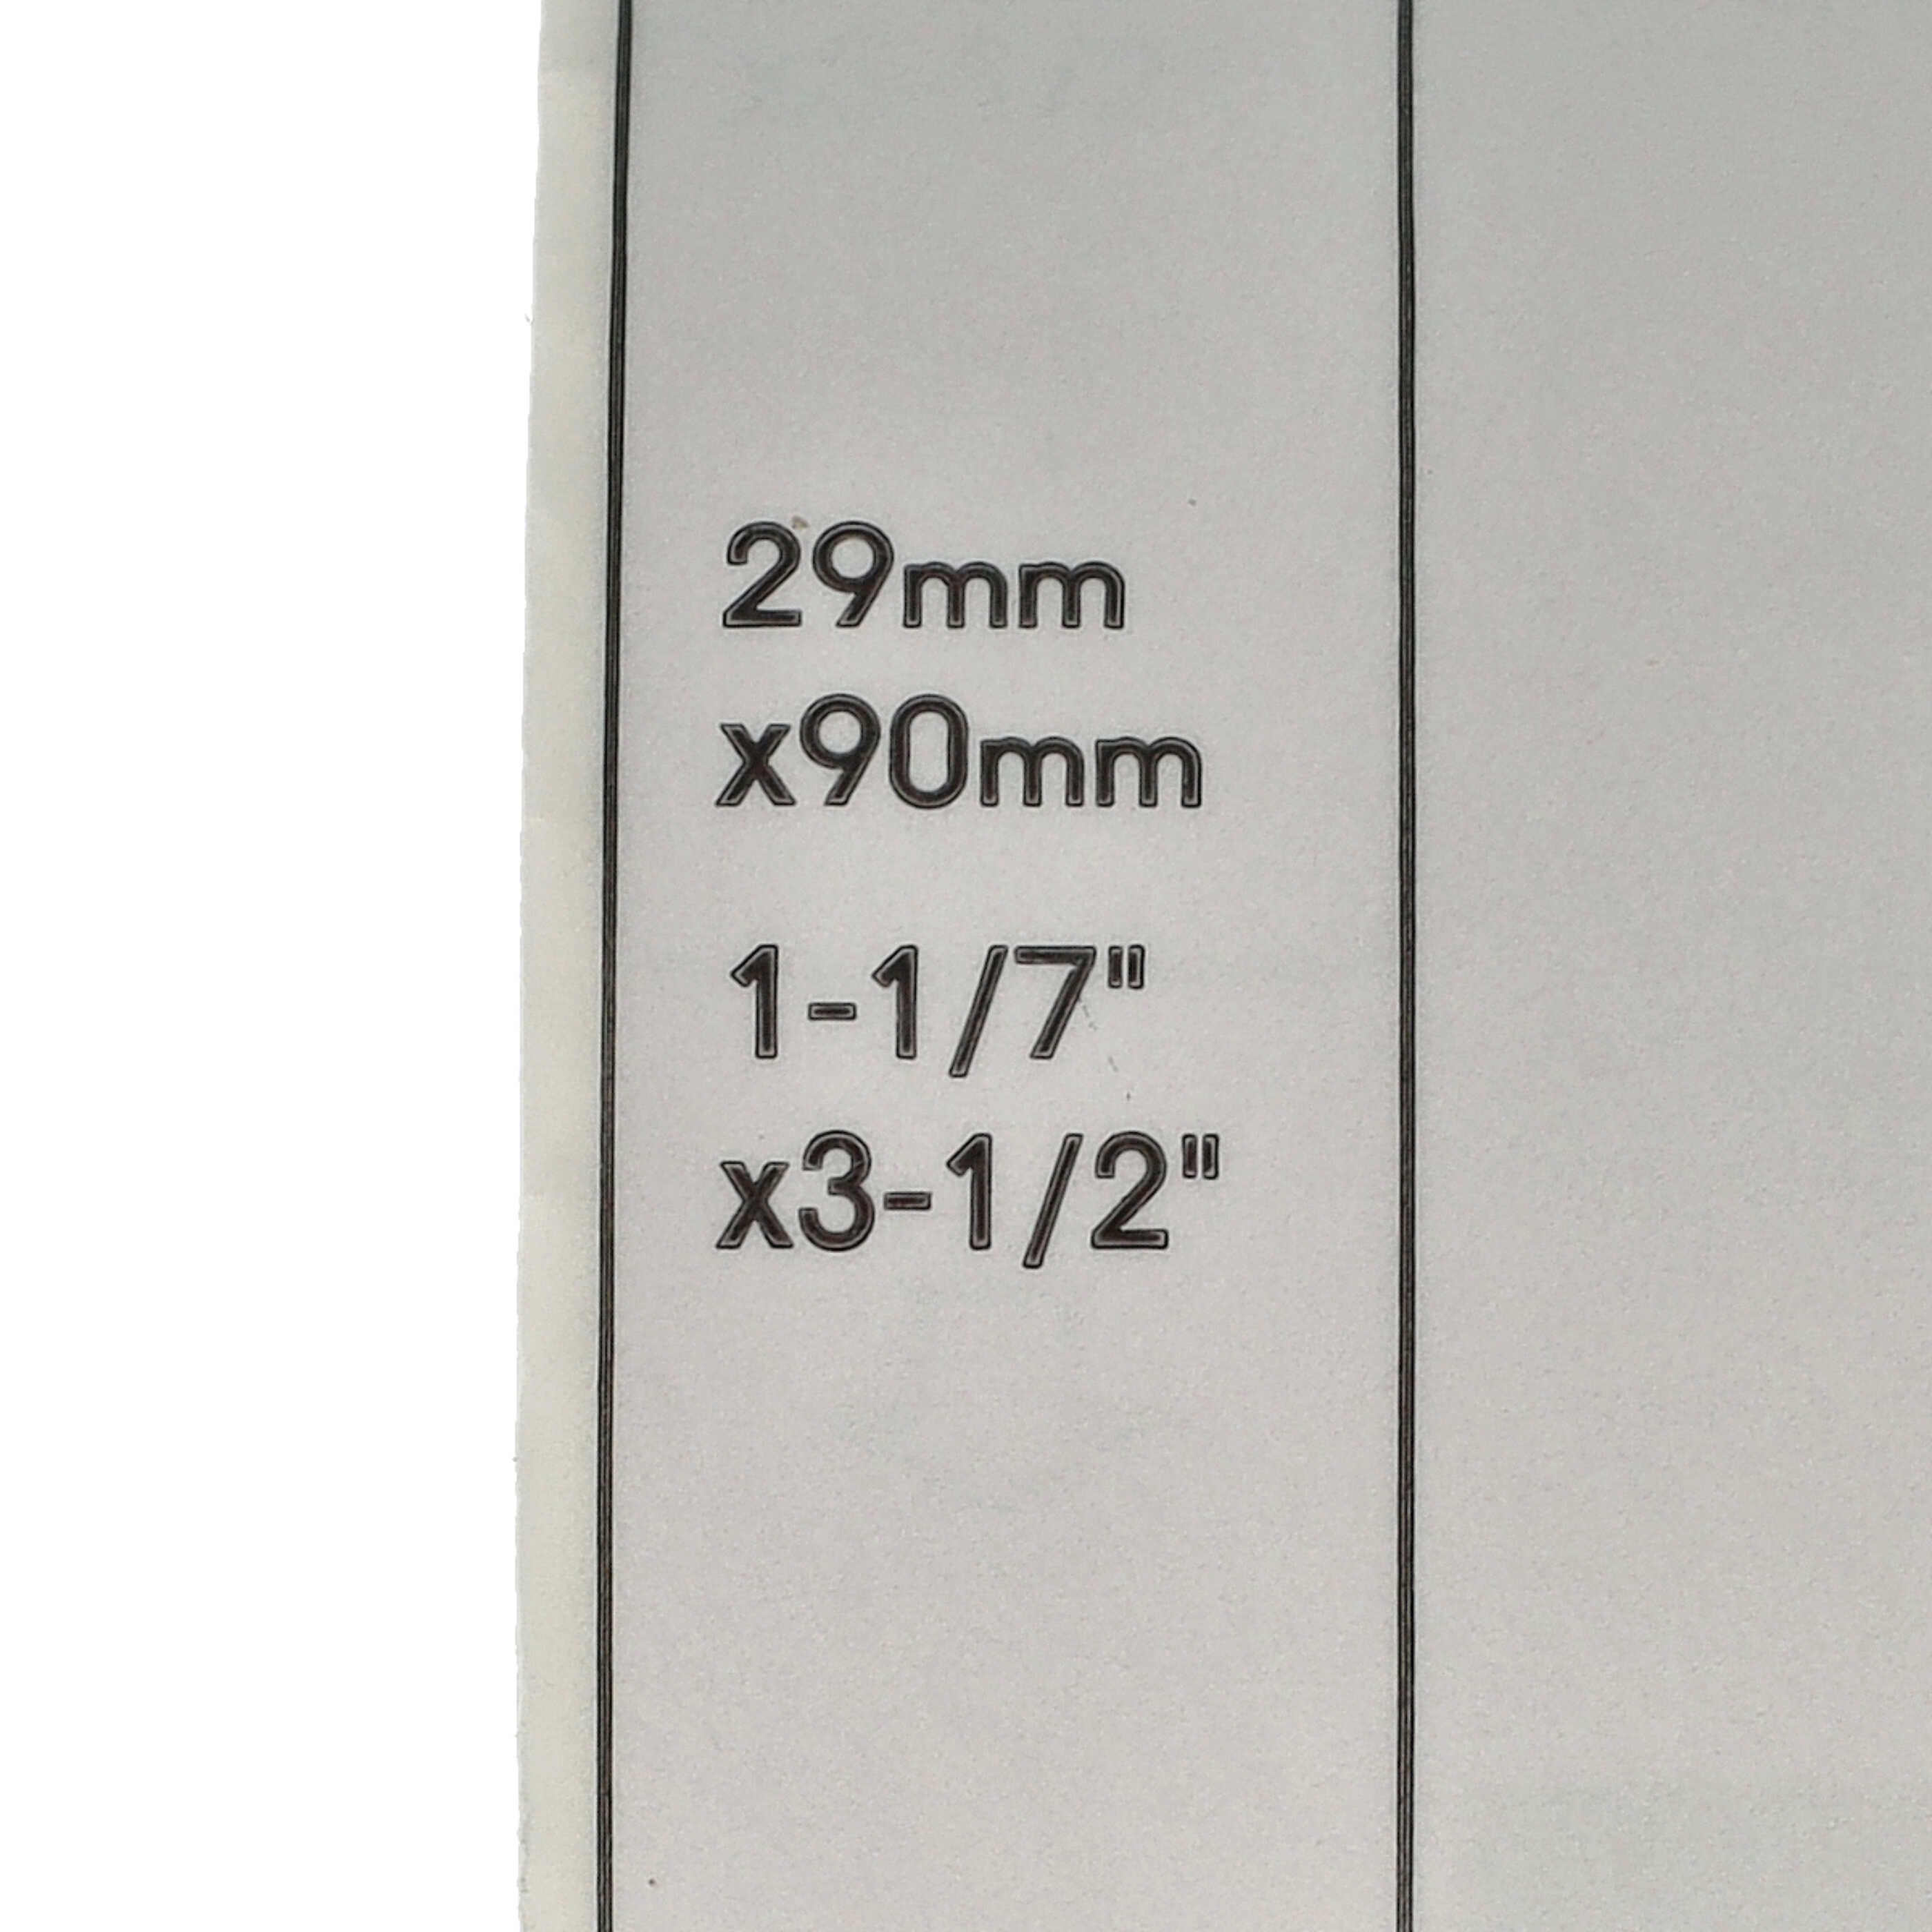 Rotolo etichette sostituisce Brother DK-11201 per etichettatrice - Standard 29mm x 90mm